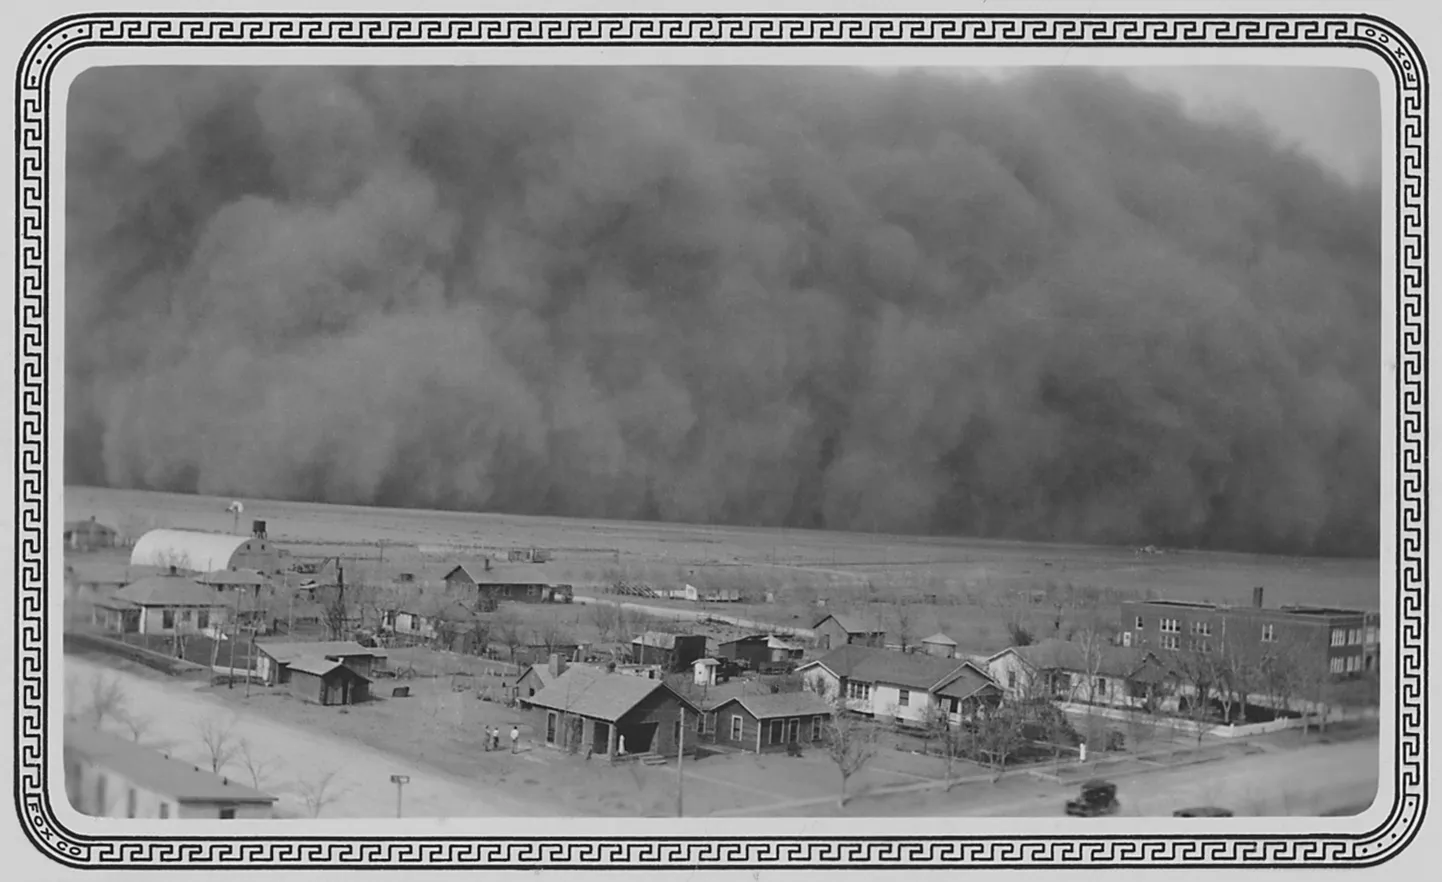 Pildil tolmutorm Kansases 1935. aastal.